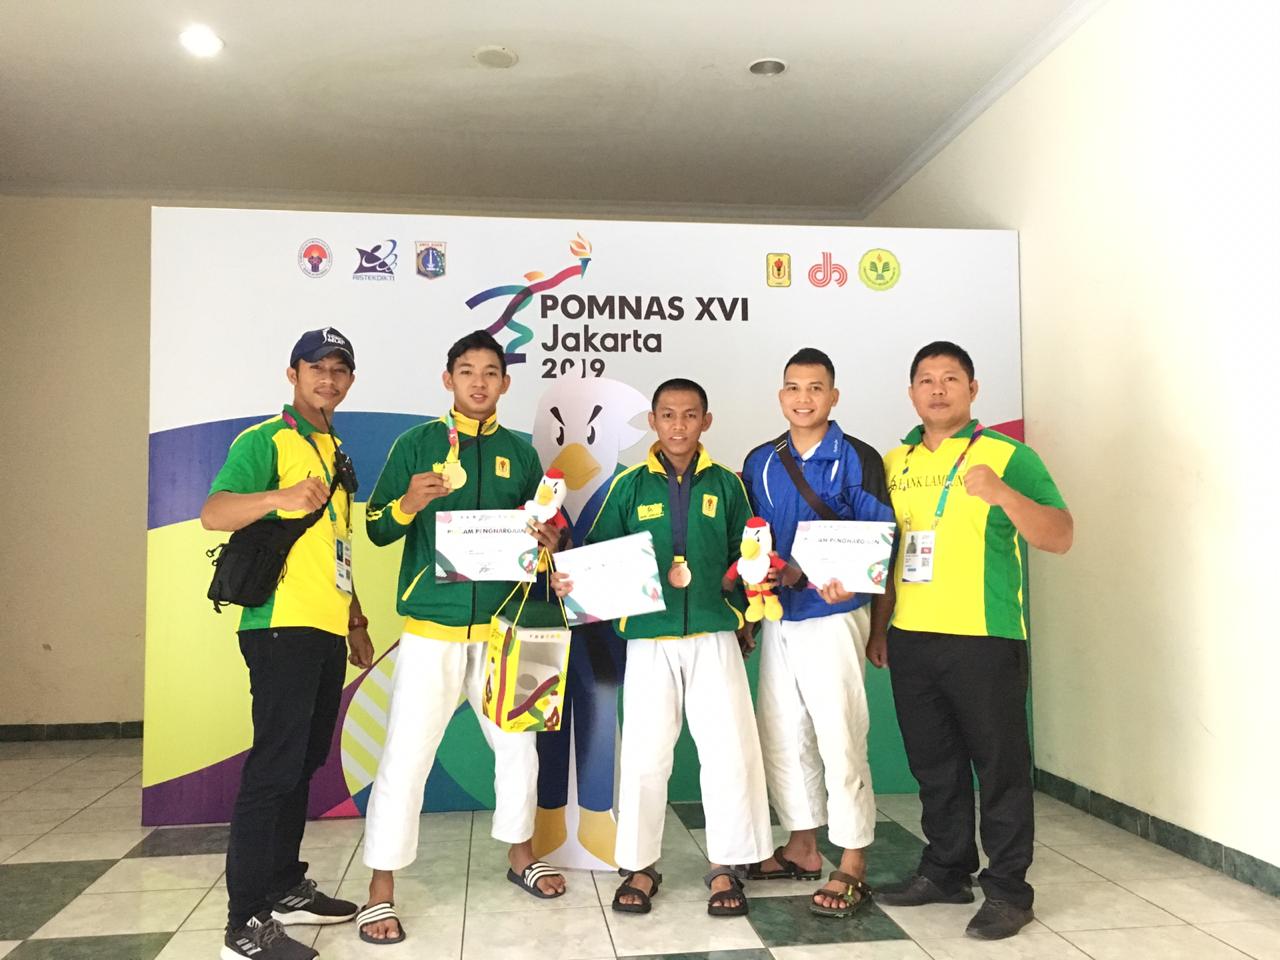 Pertandingan Pertama Pomnas XIV, Judo Lampung Raih 1 Emas dan 2 Perunggu